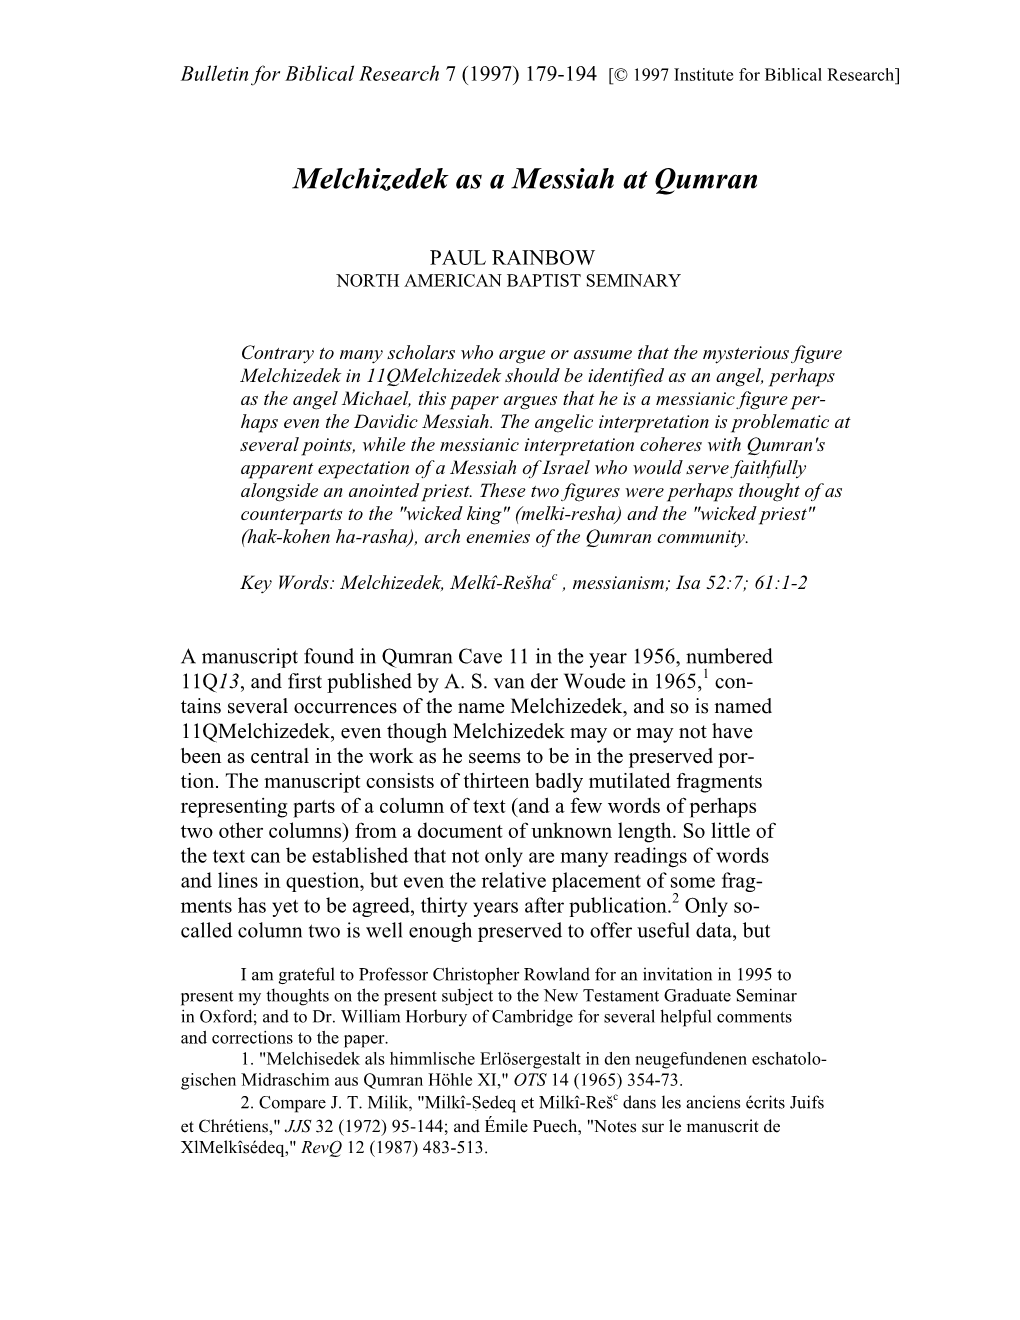 Melchizedek As a Messiah at Qumran